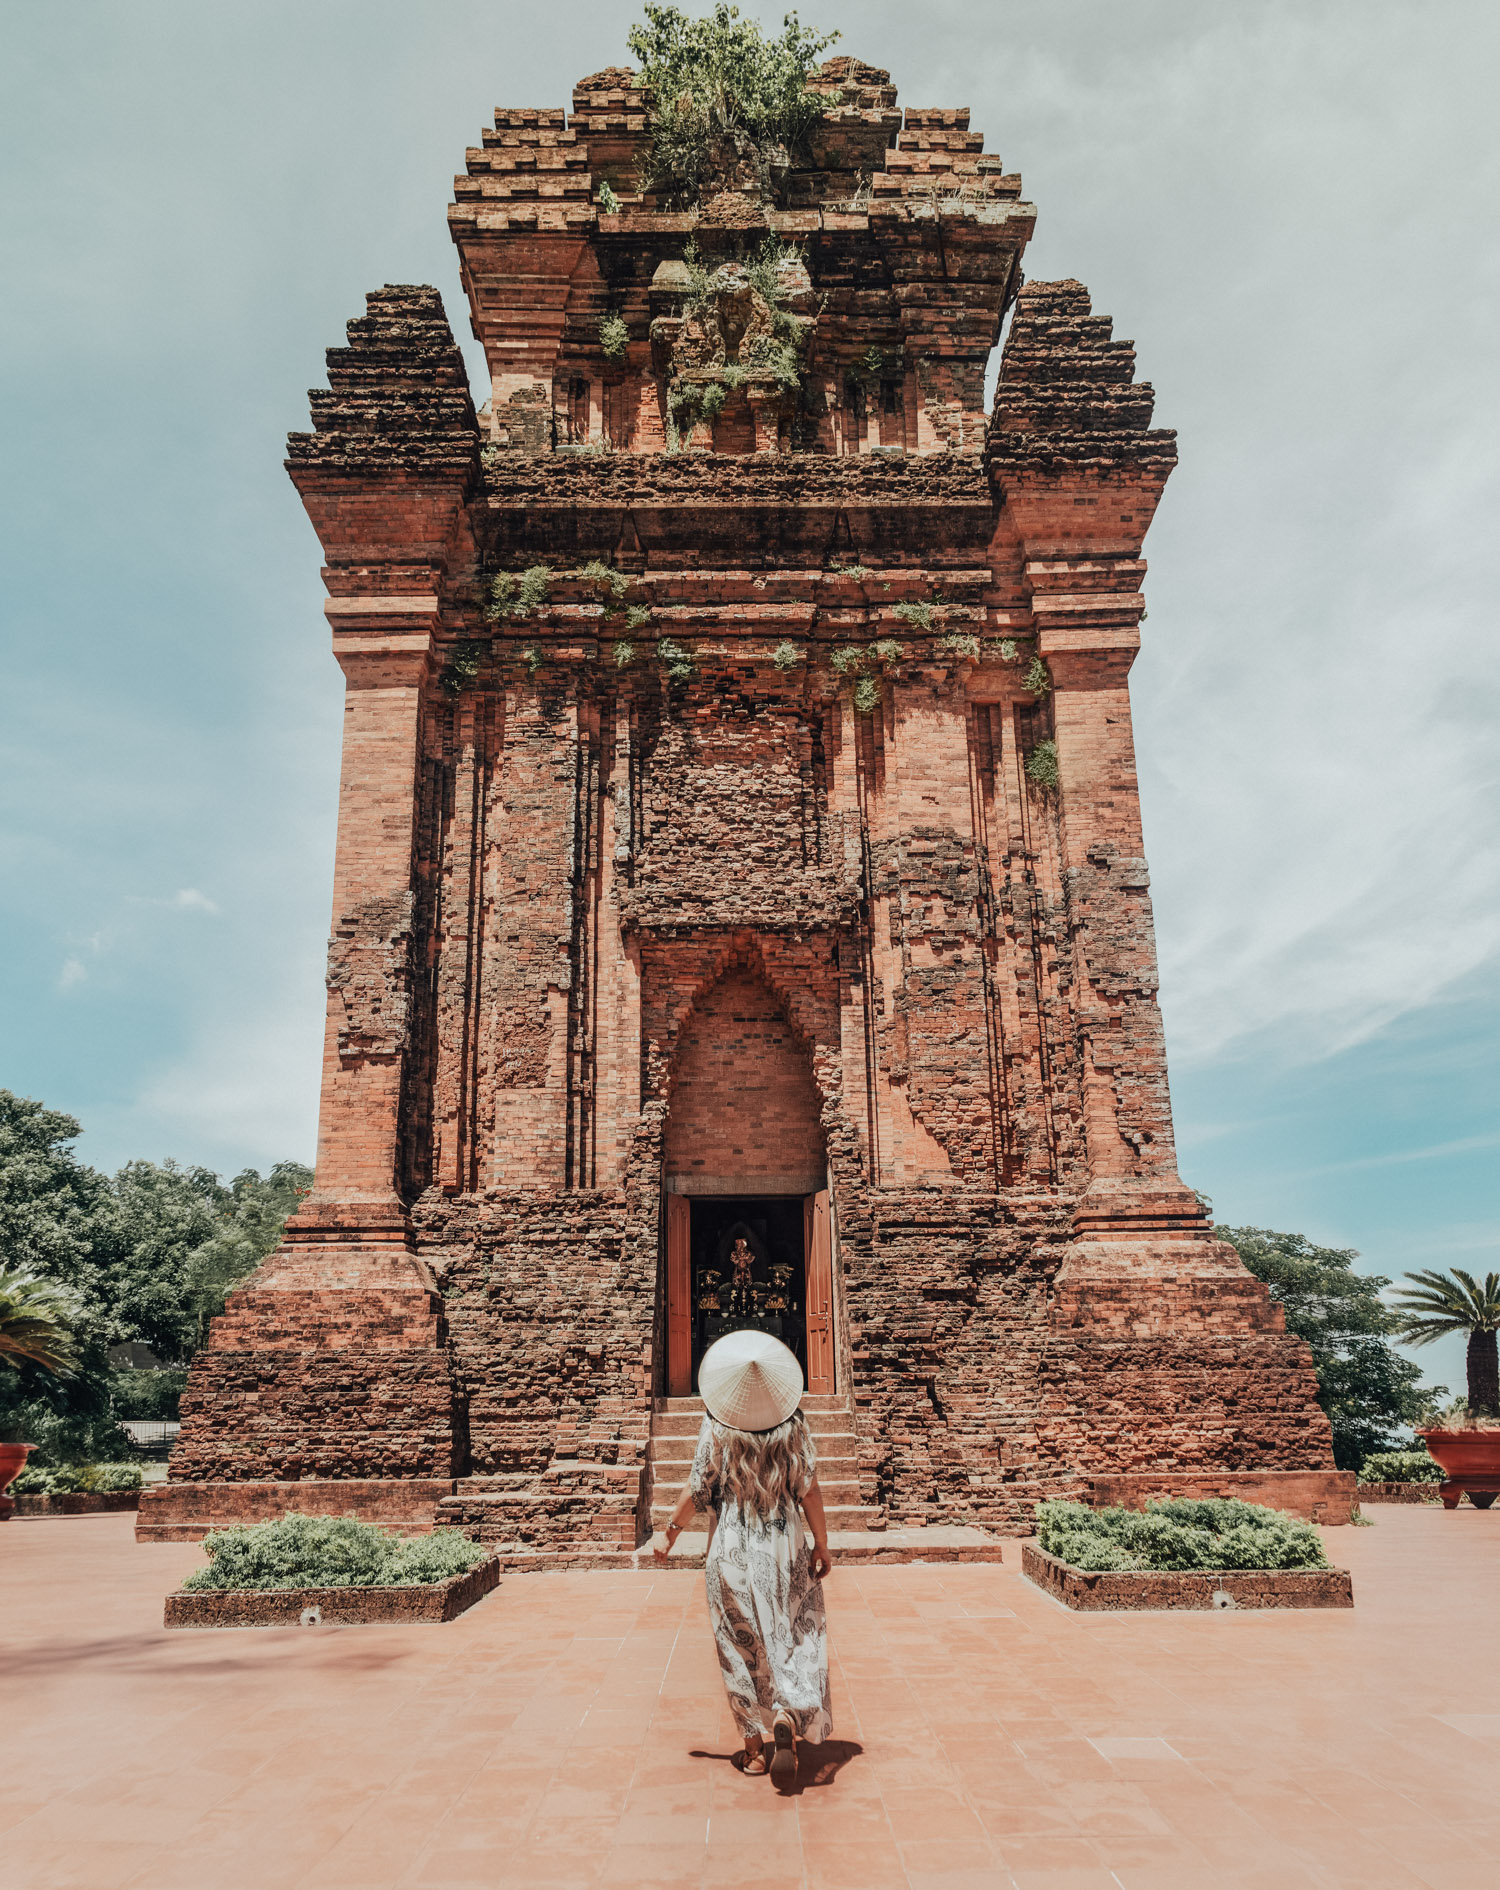 Nhan Tower - Things to Do in Phu Yen, Vietnam